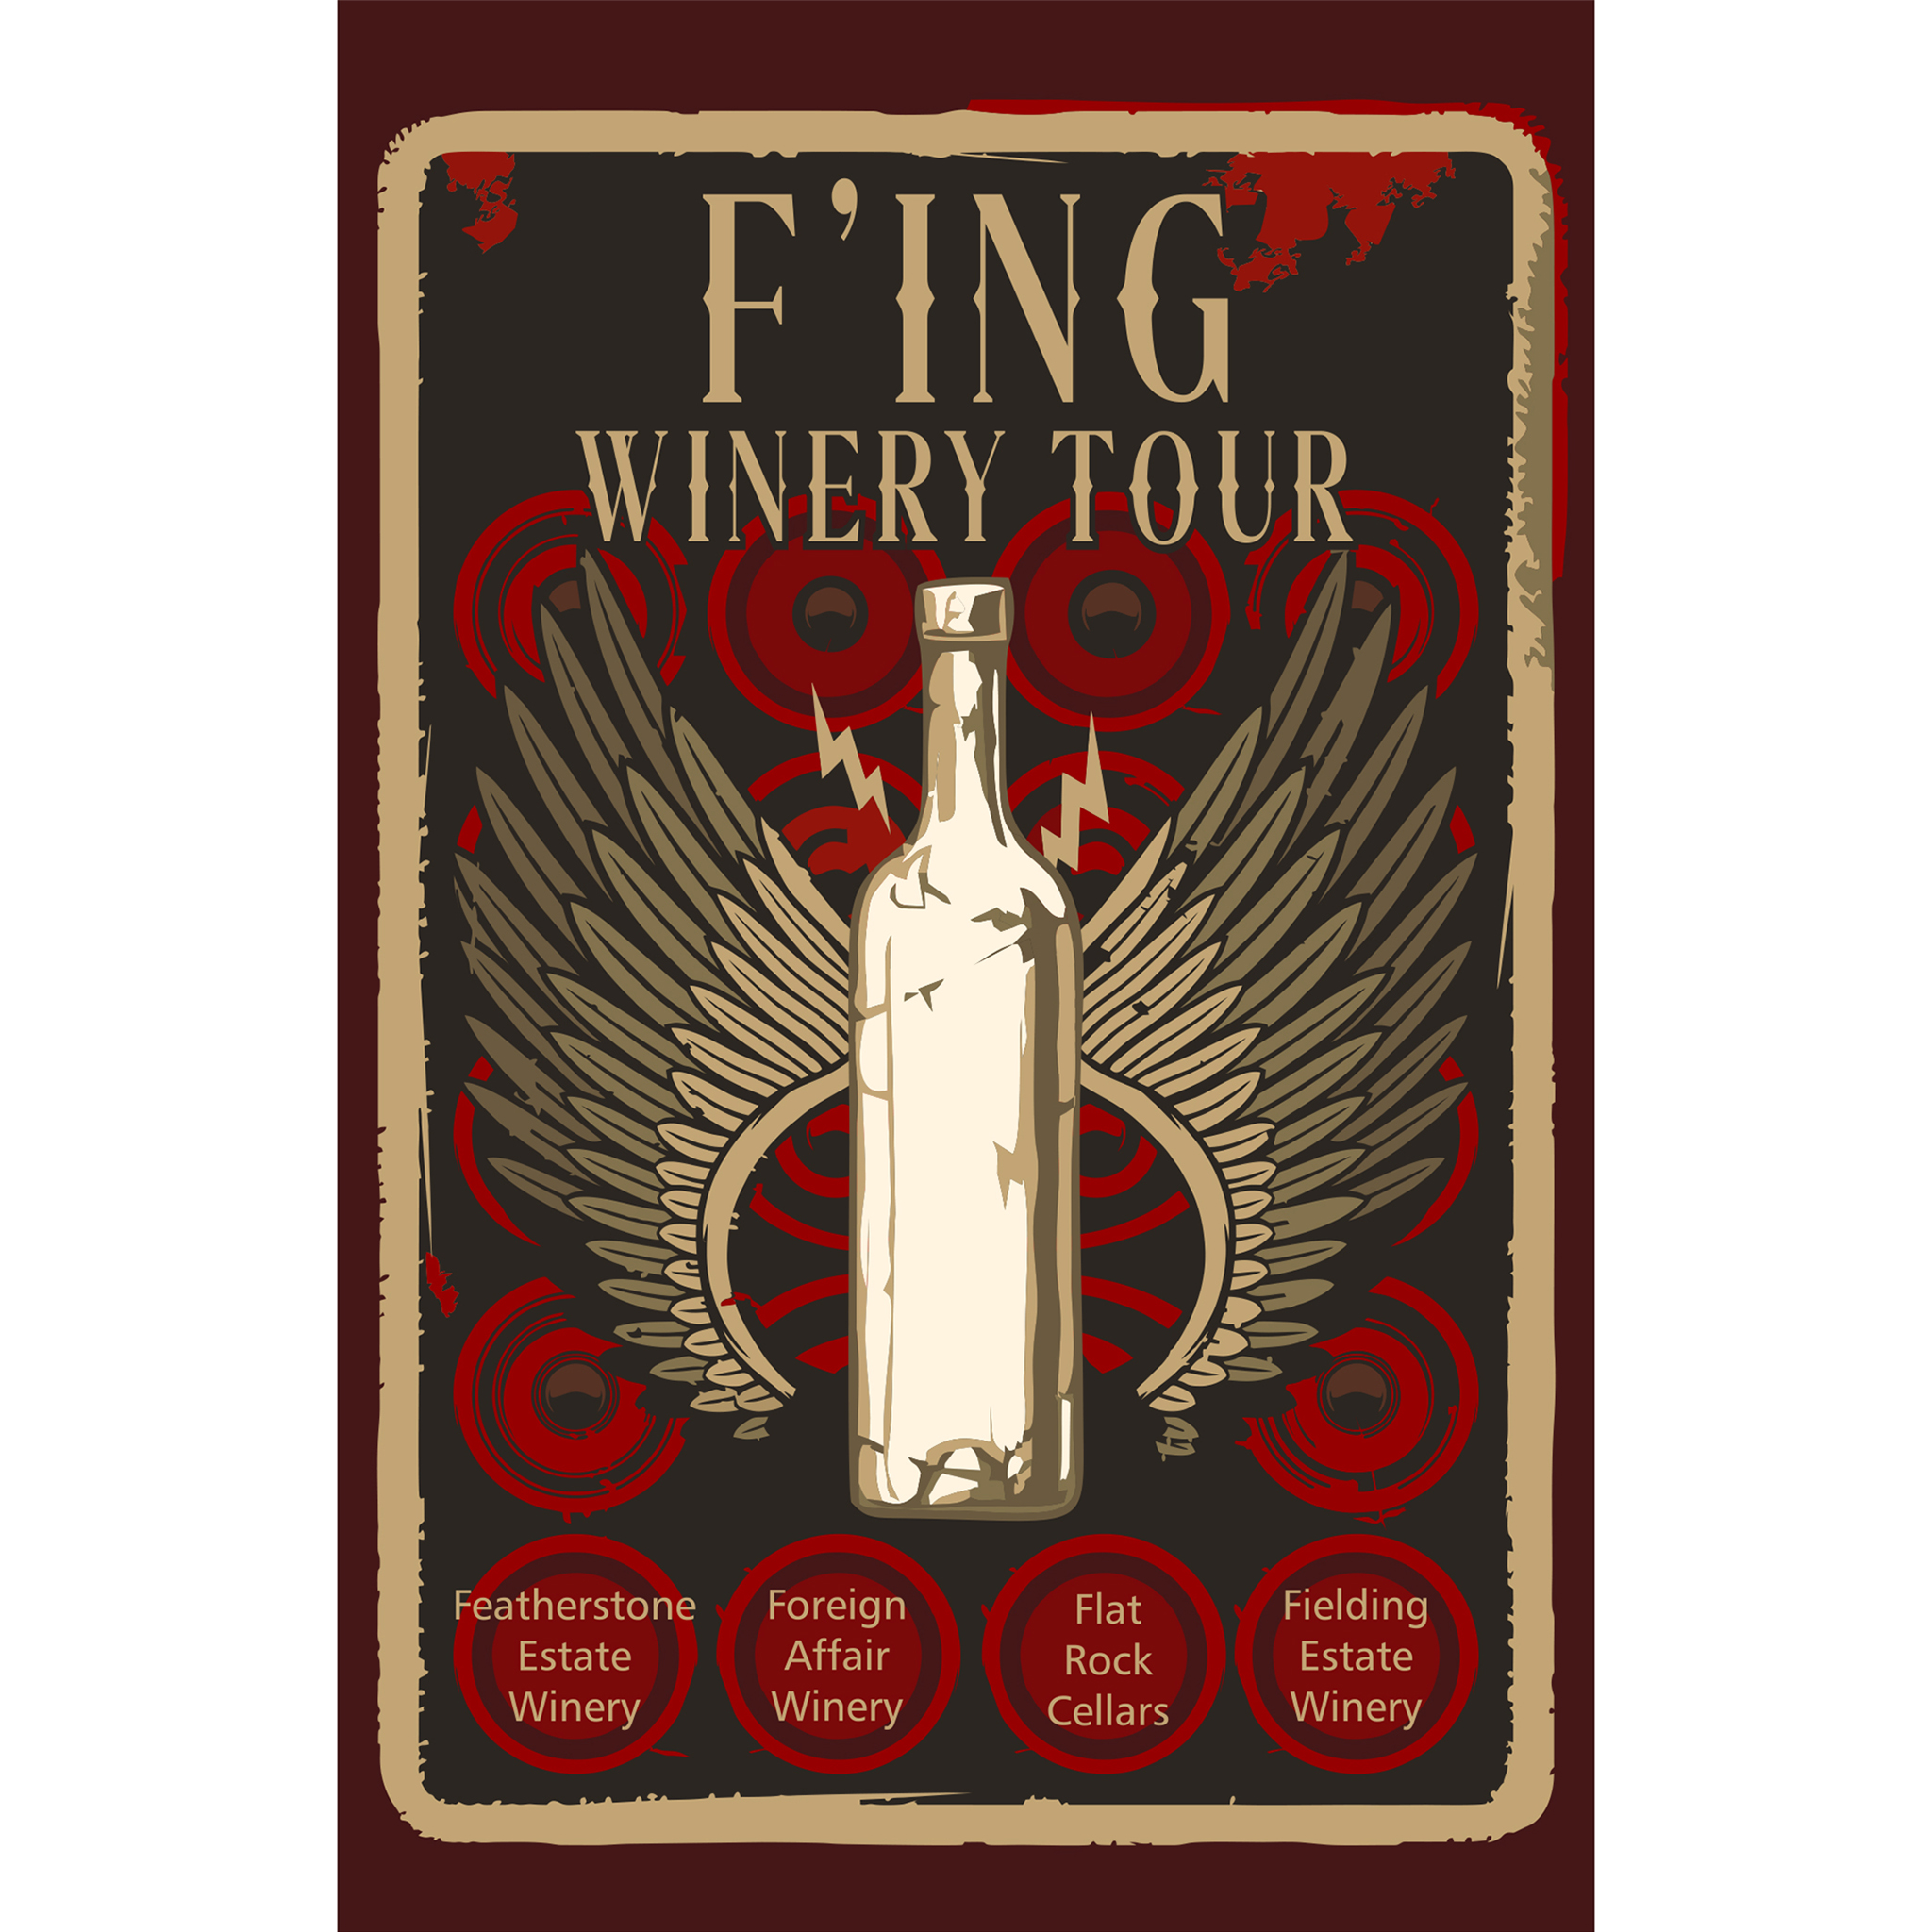 F'ING WINERY TOUR